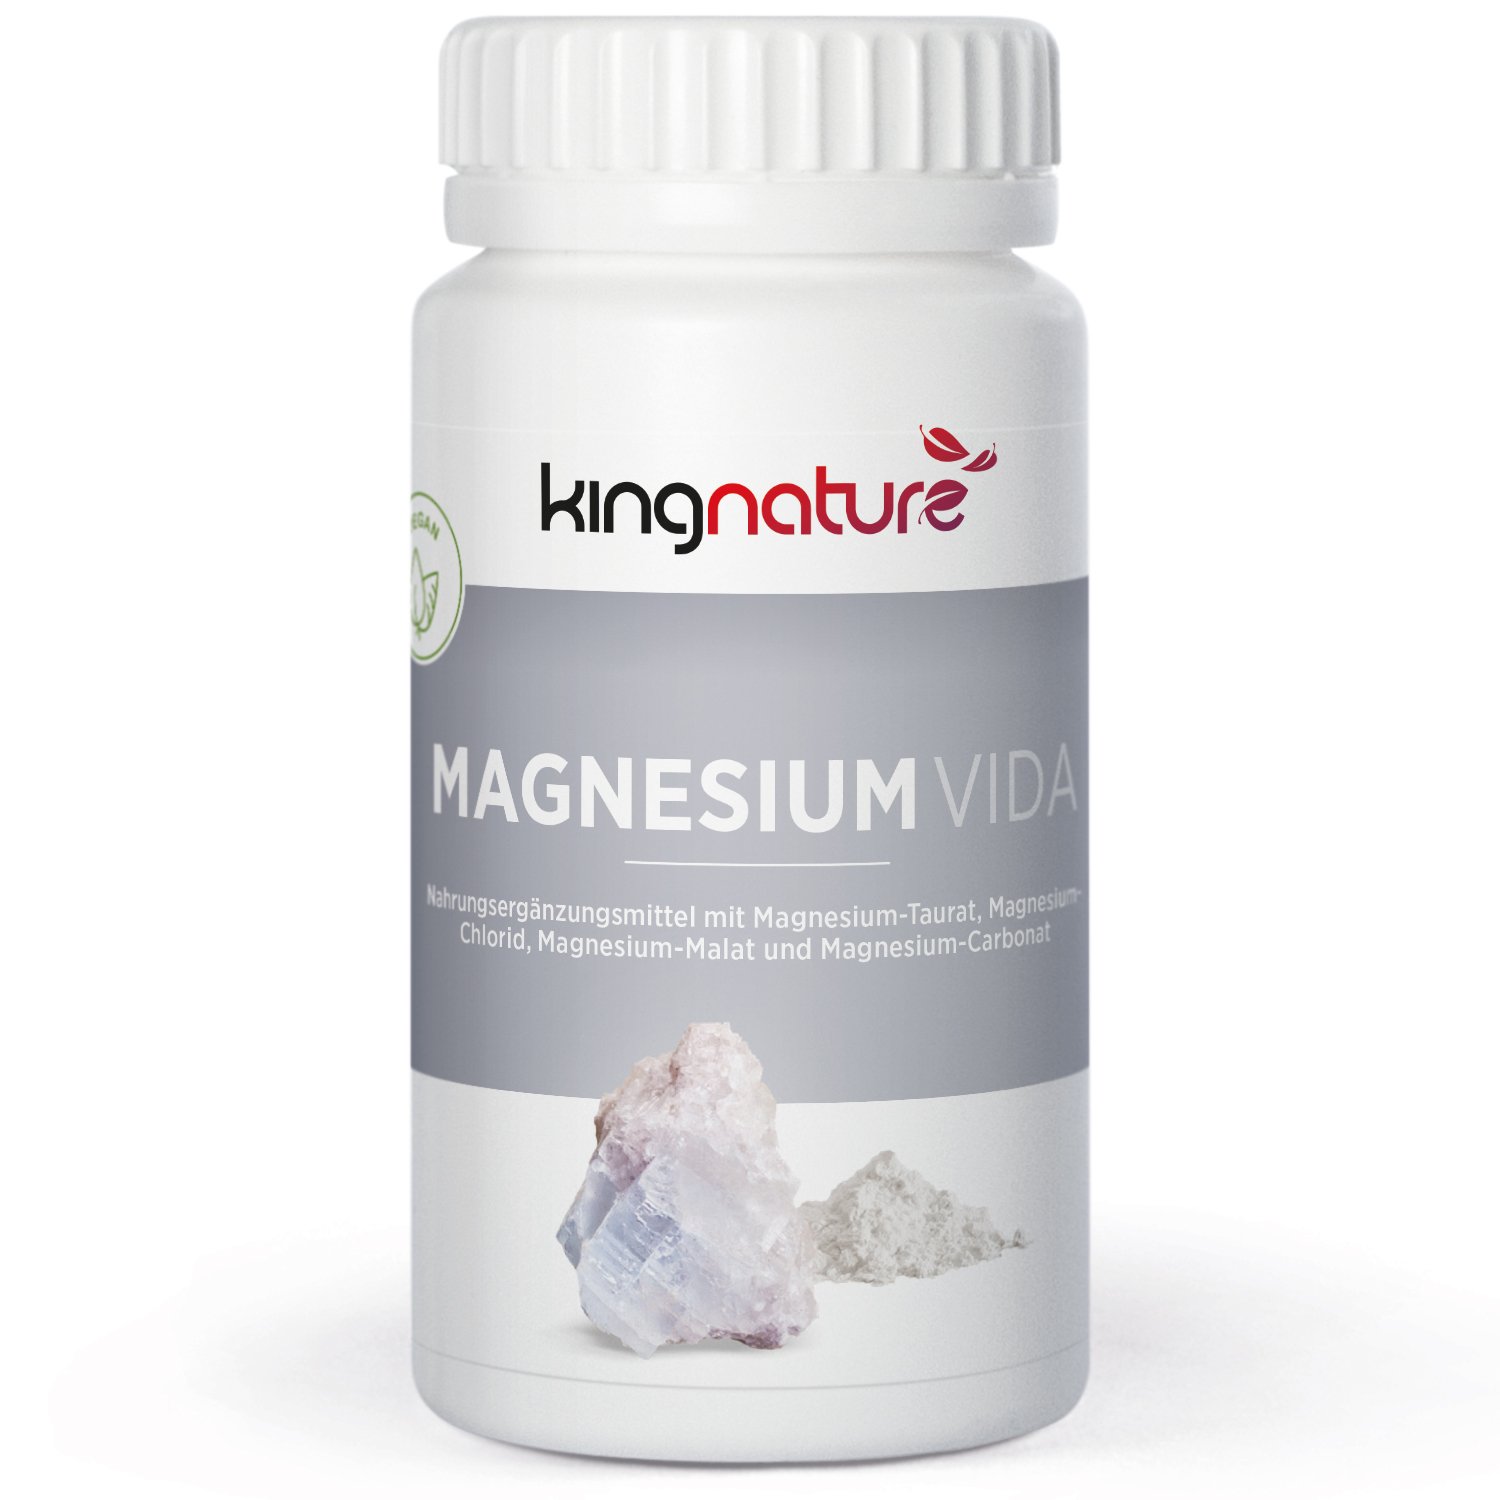 Kingnature Magnesium Vida Pic1